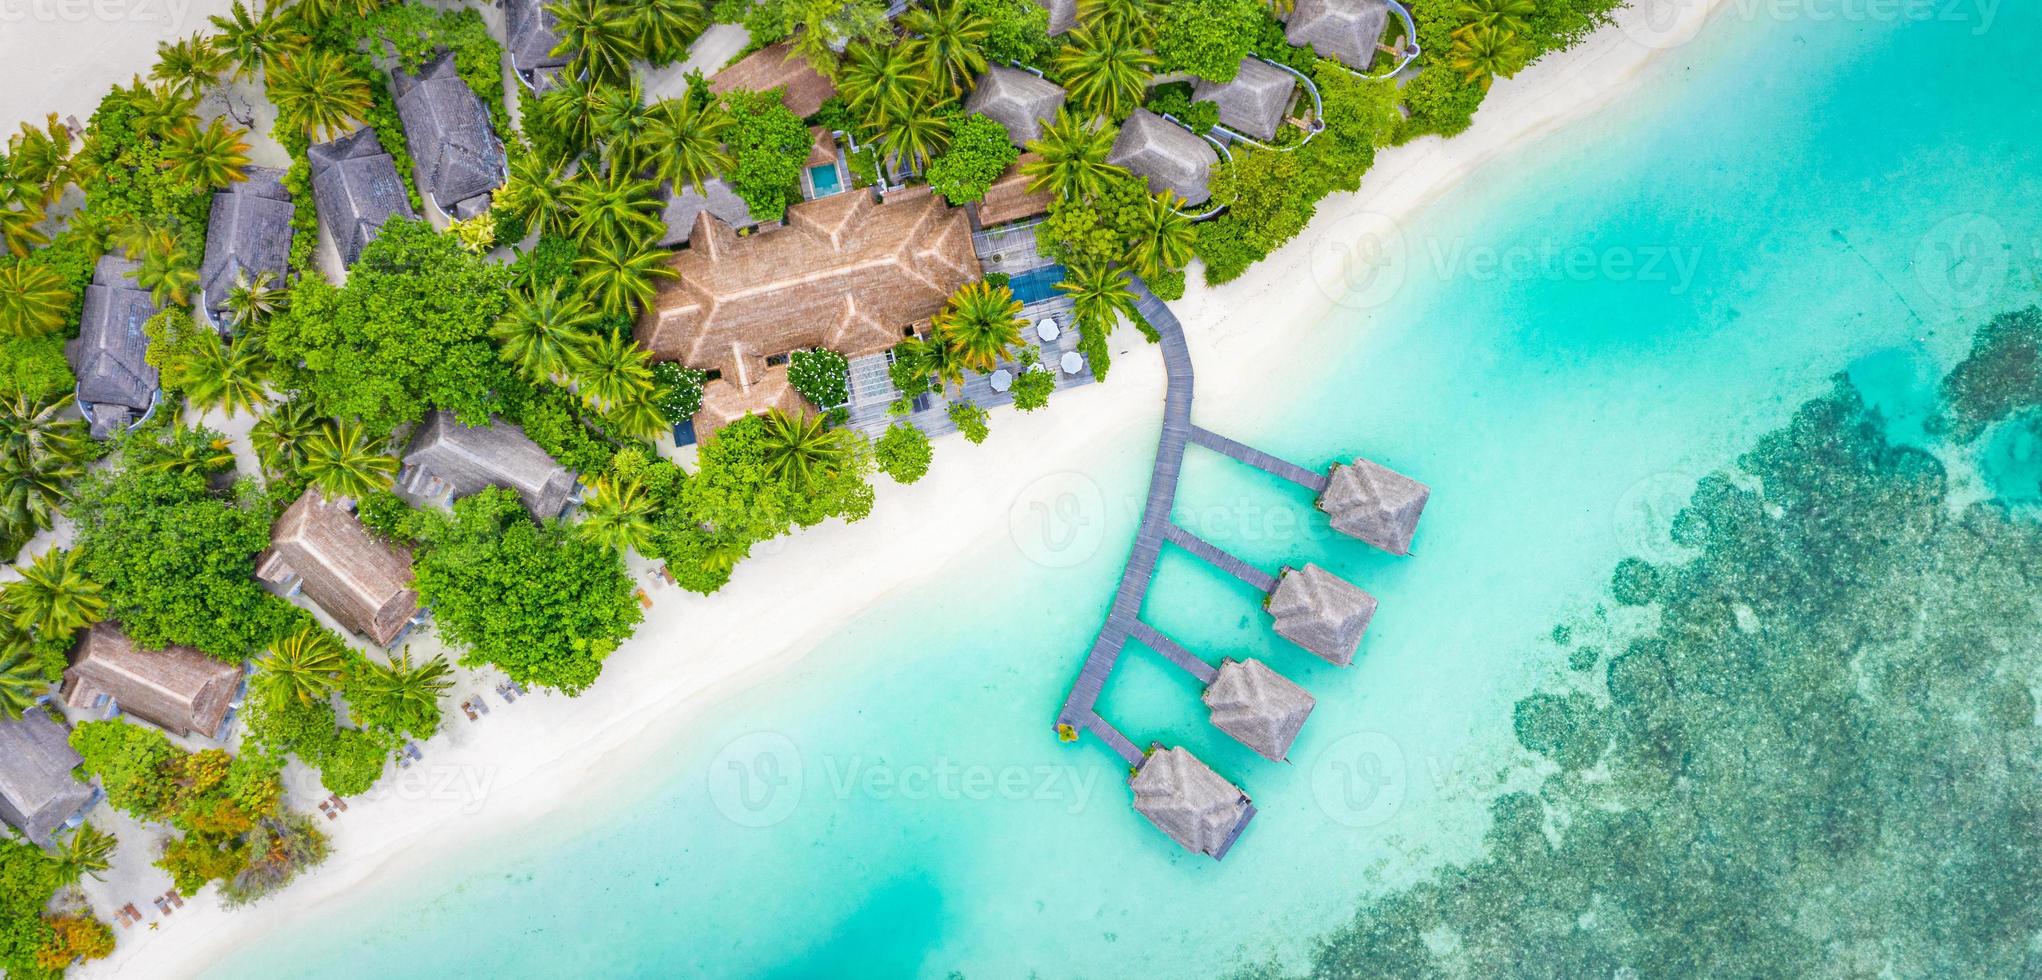 paysages paradisiaques des maldives. vue de dessus paysage aérien tropical, paysage marin avec longue jetée, villas sur l'eau, magnifique plage de la mer et du lagon, nature tropicale. bannière de destination touristique exotique, vacances d'été photo